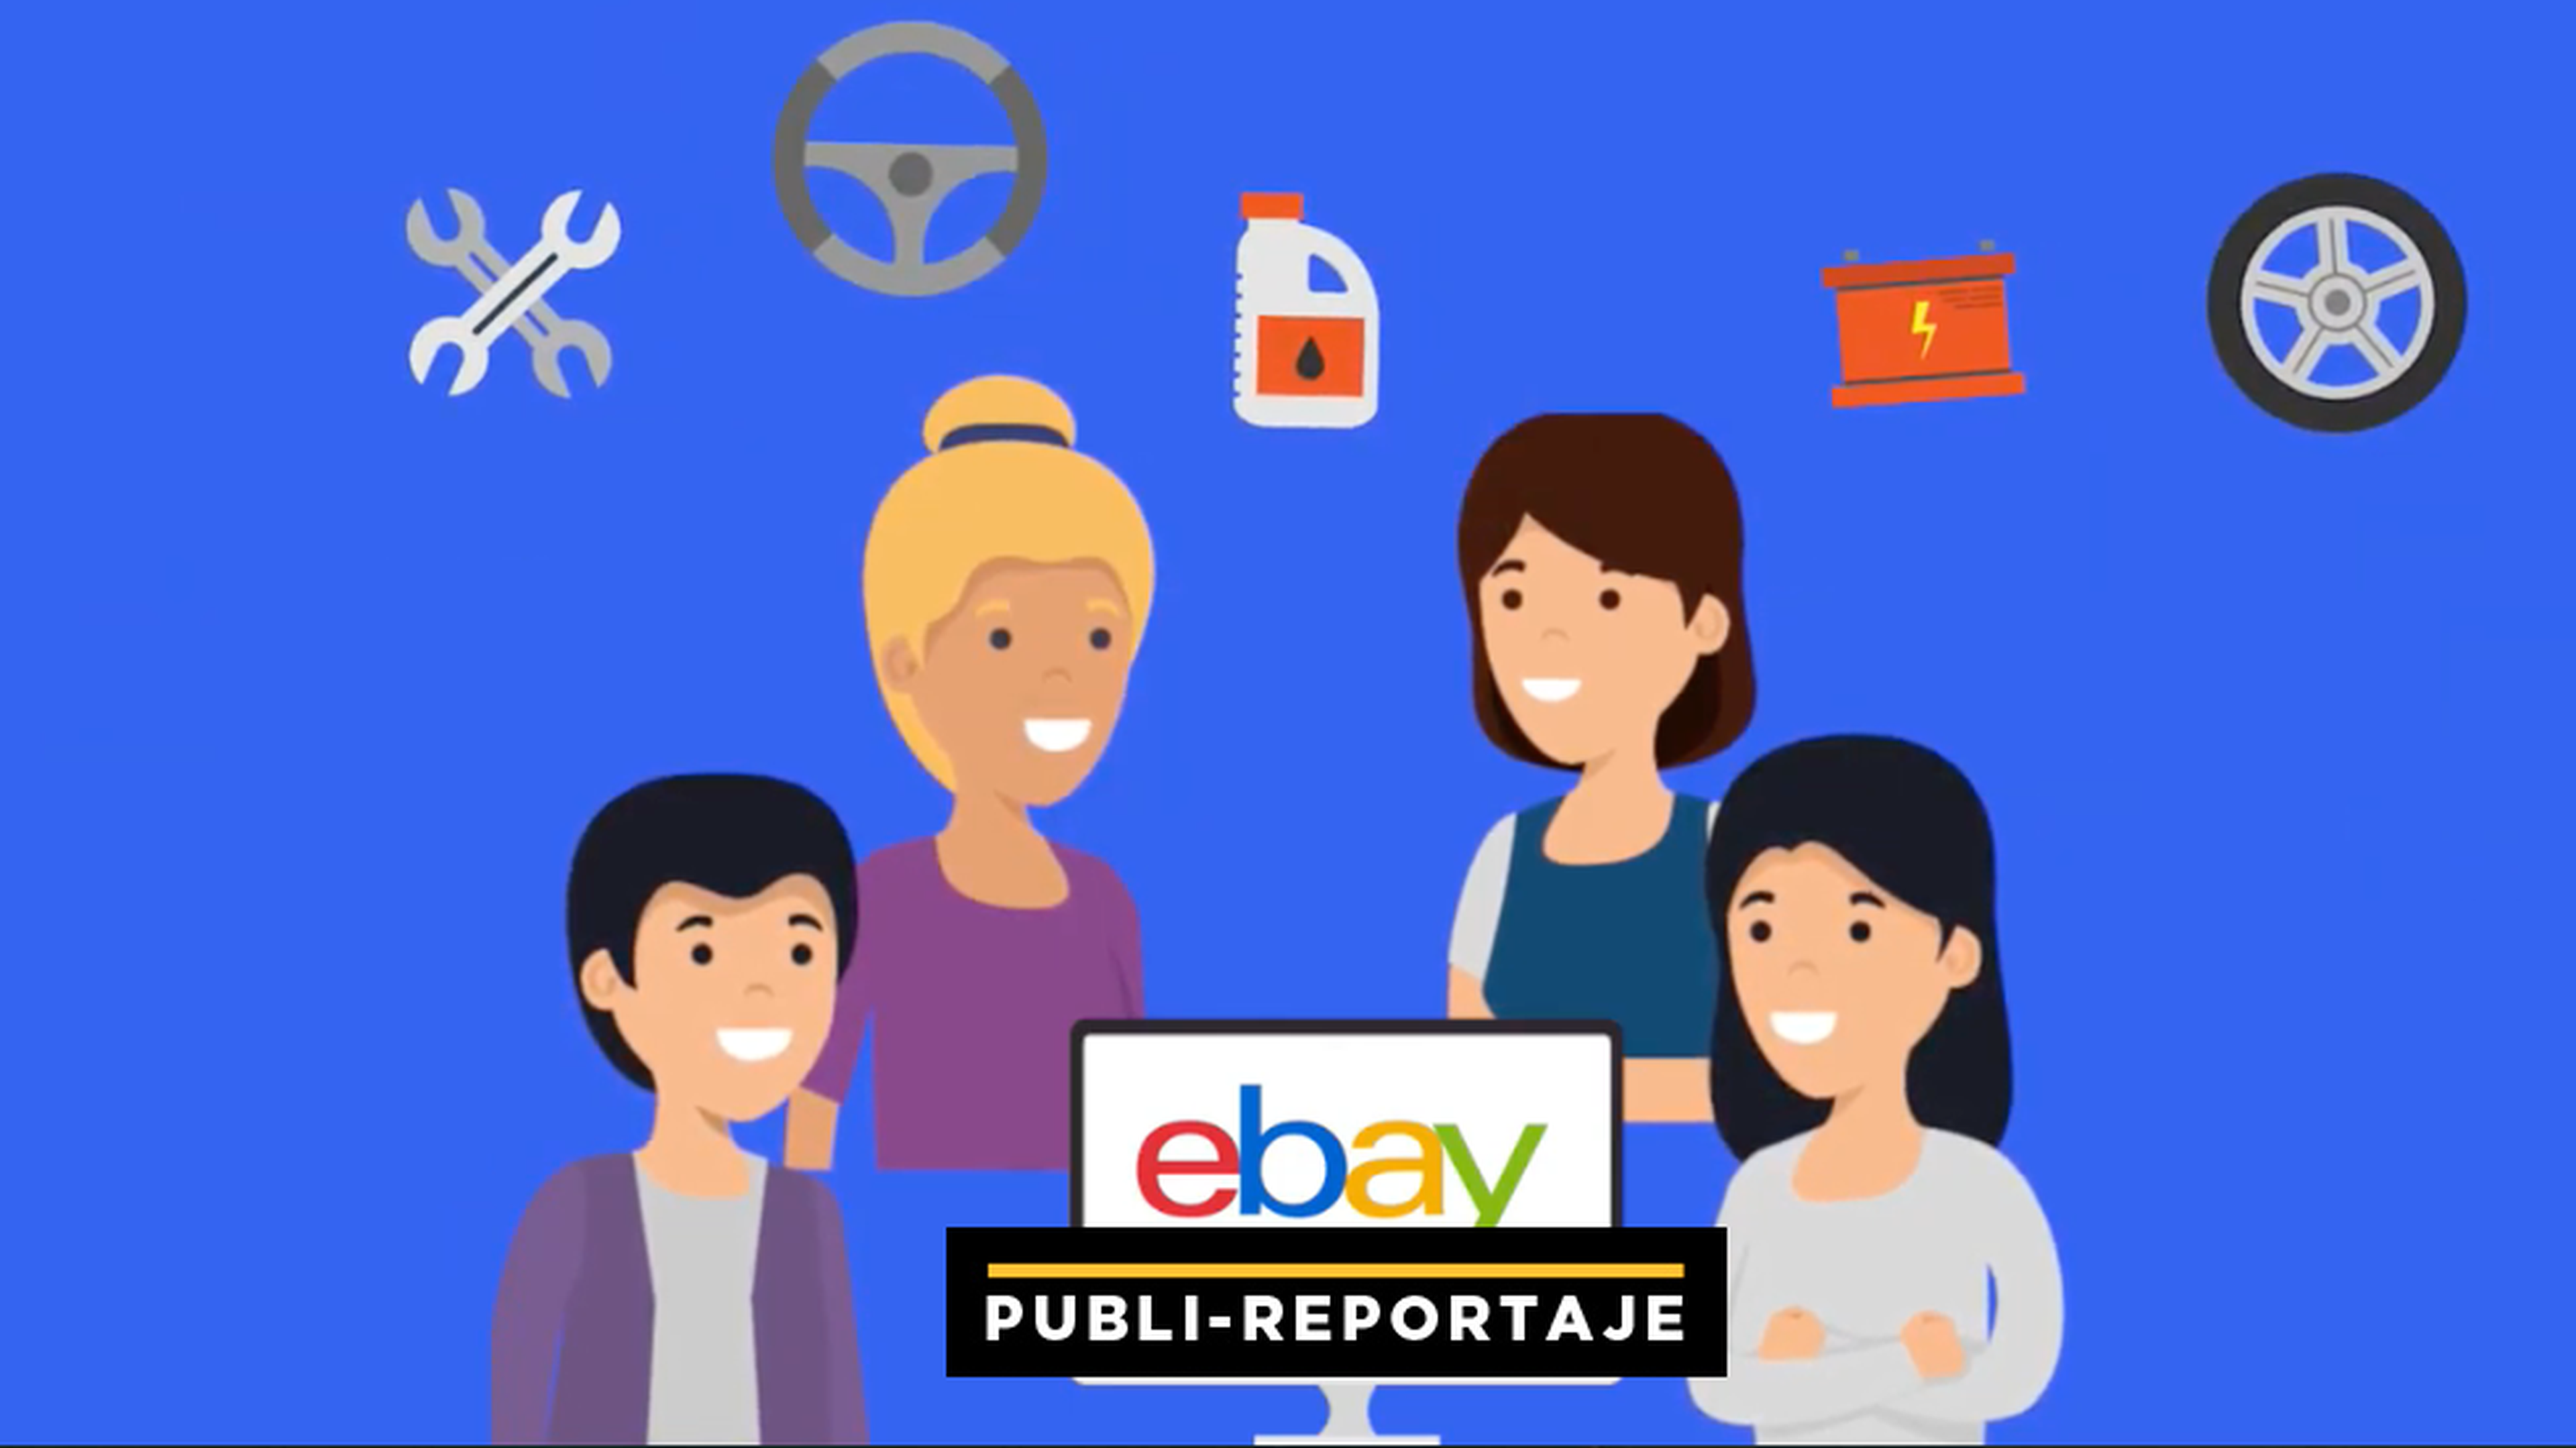 Ebay vídeo motor